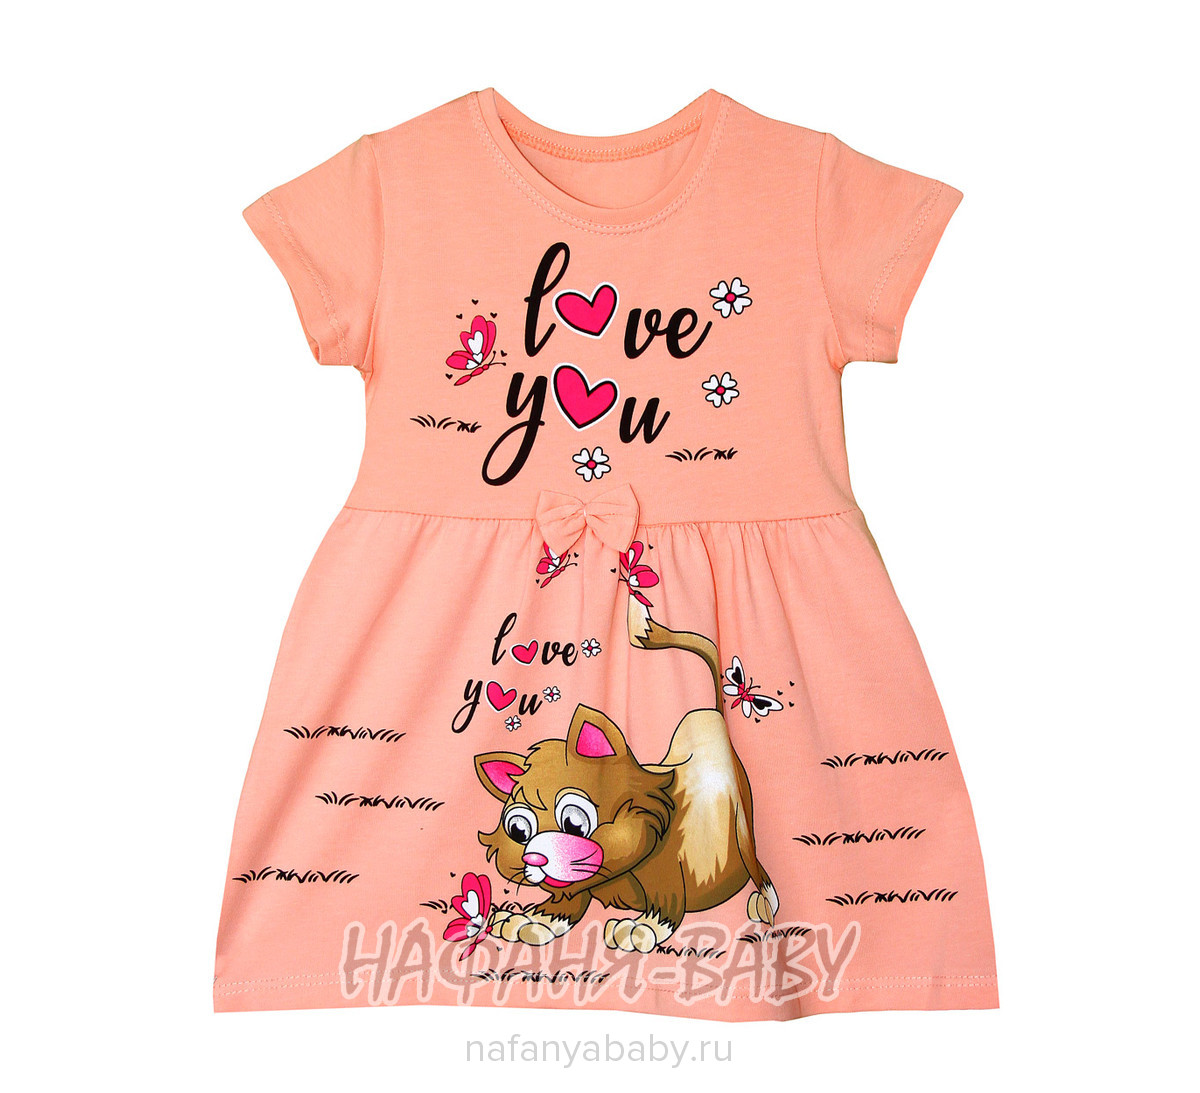 Платье трикотажное UNRULY арт: 3542, 1-4 года, 5-9 лет, цвет персиковый, оптом Турция